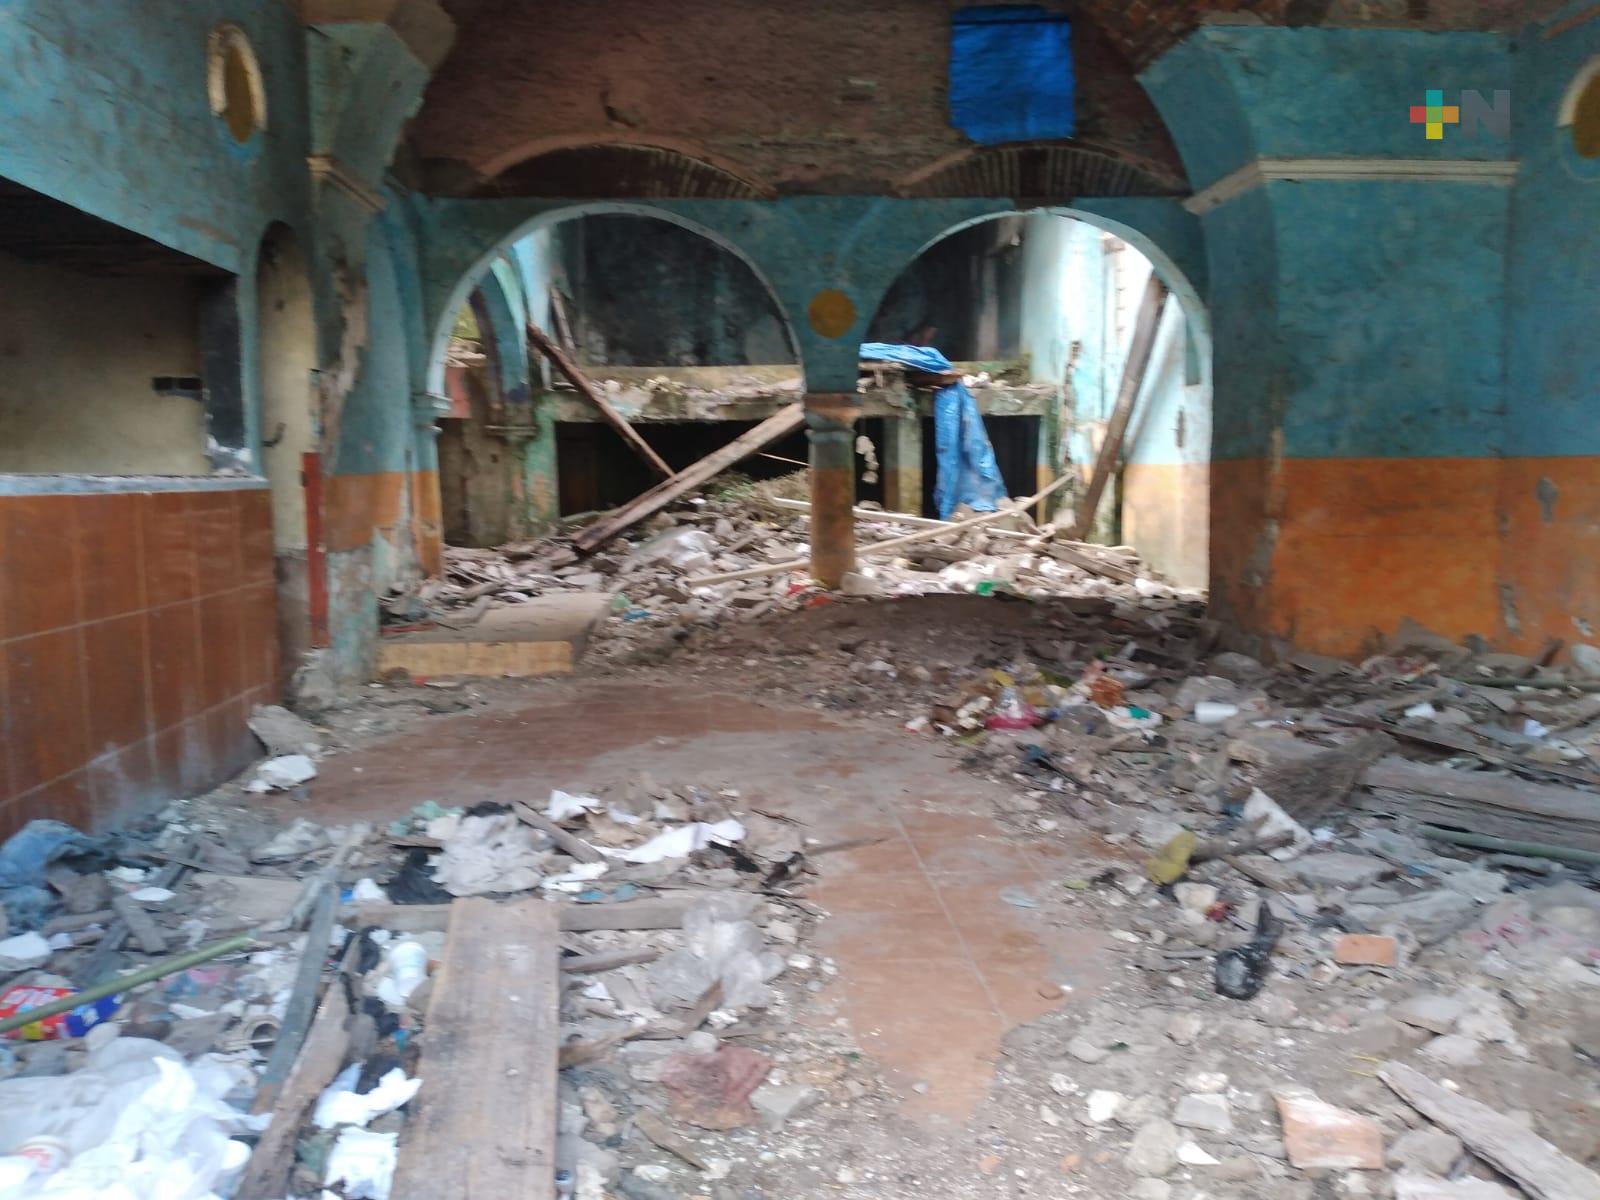 Casa abandonada representa un peligro a transeúntes en municipio de Veracruz